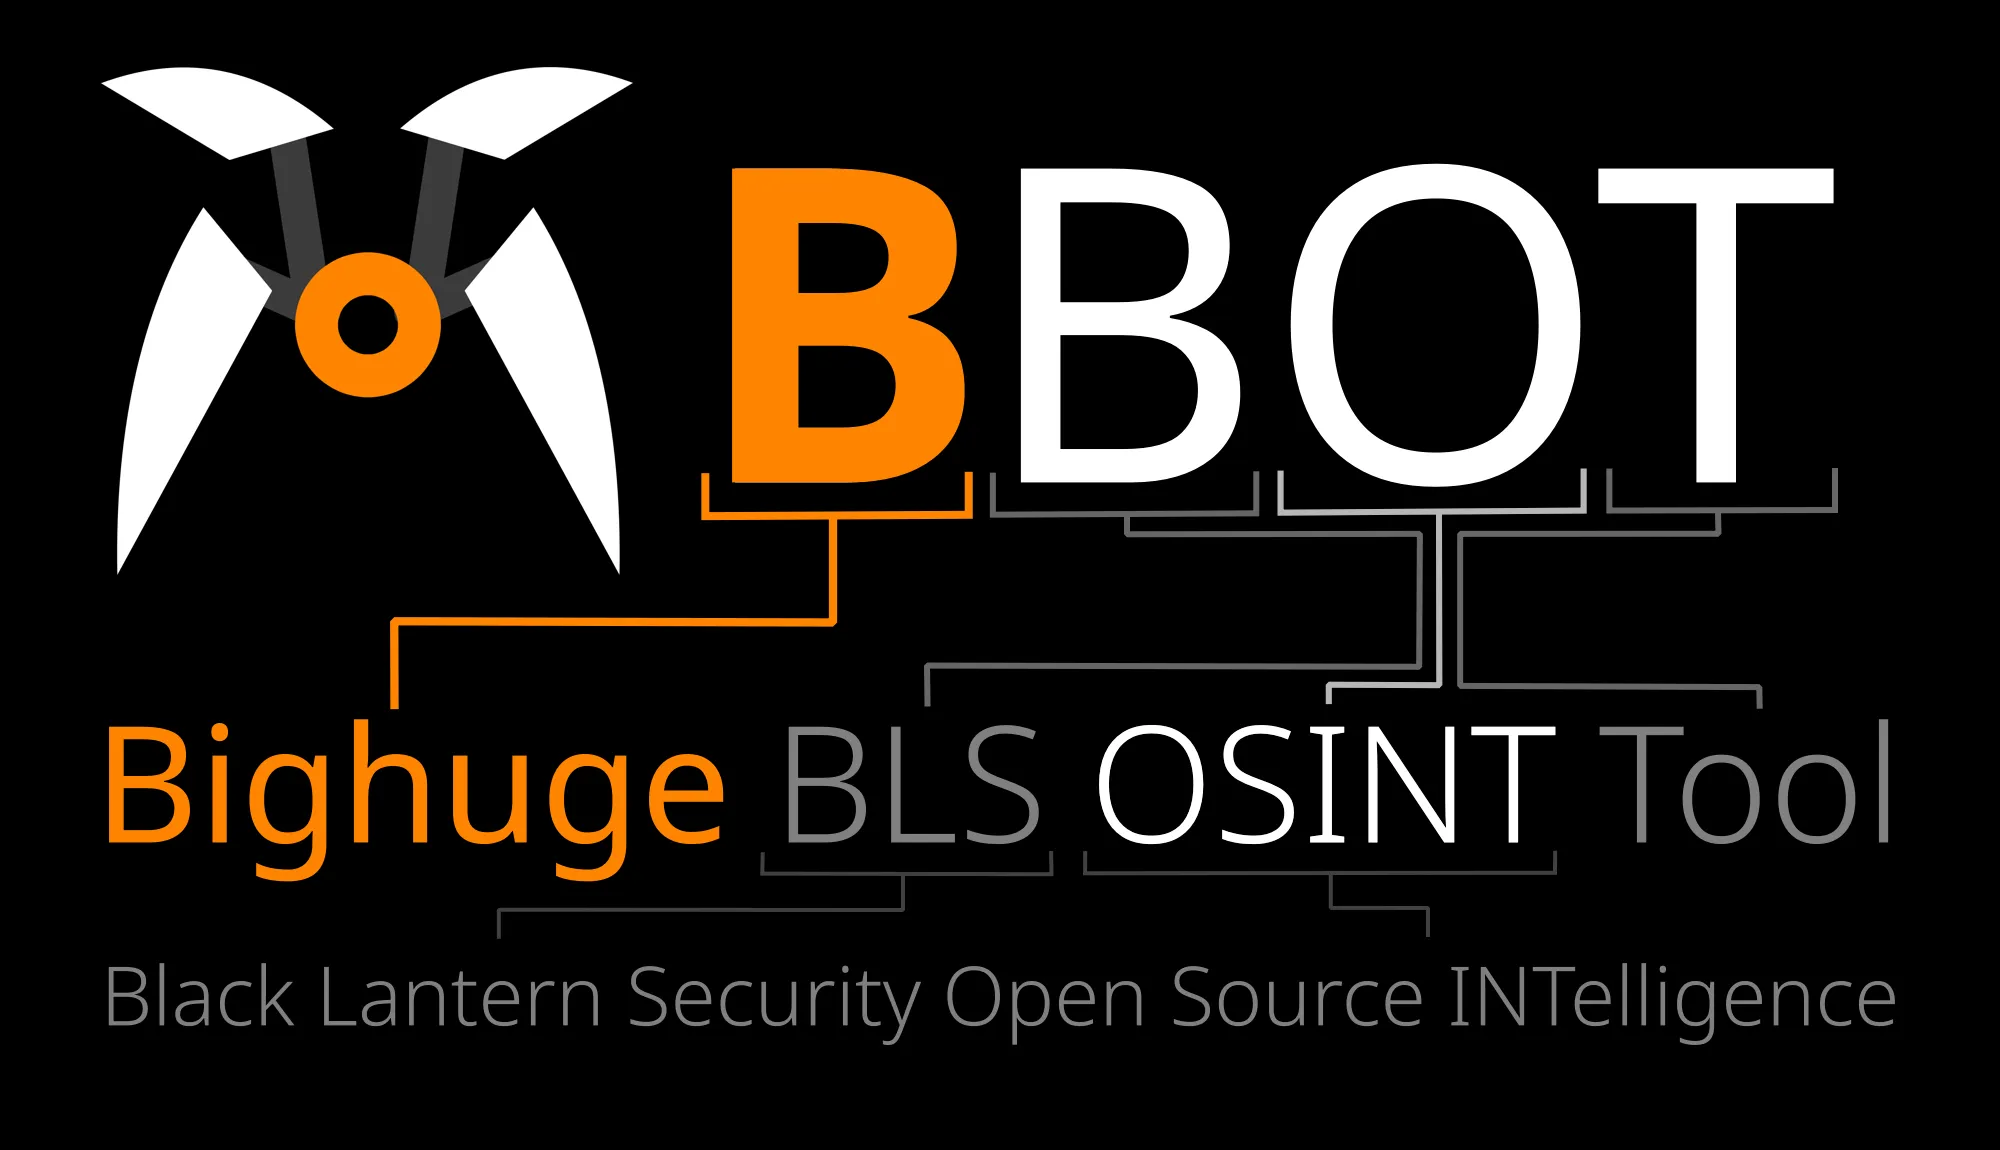 bbot 黑客自动化OSINT工具